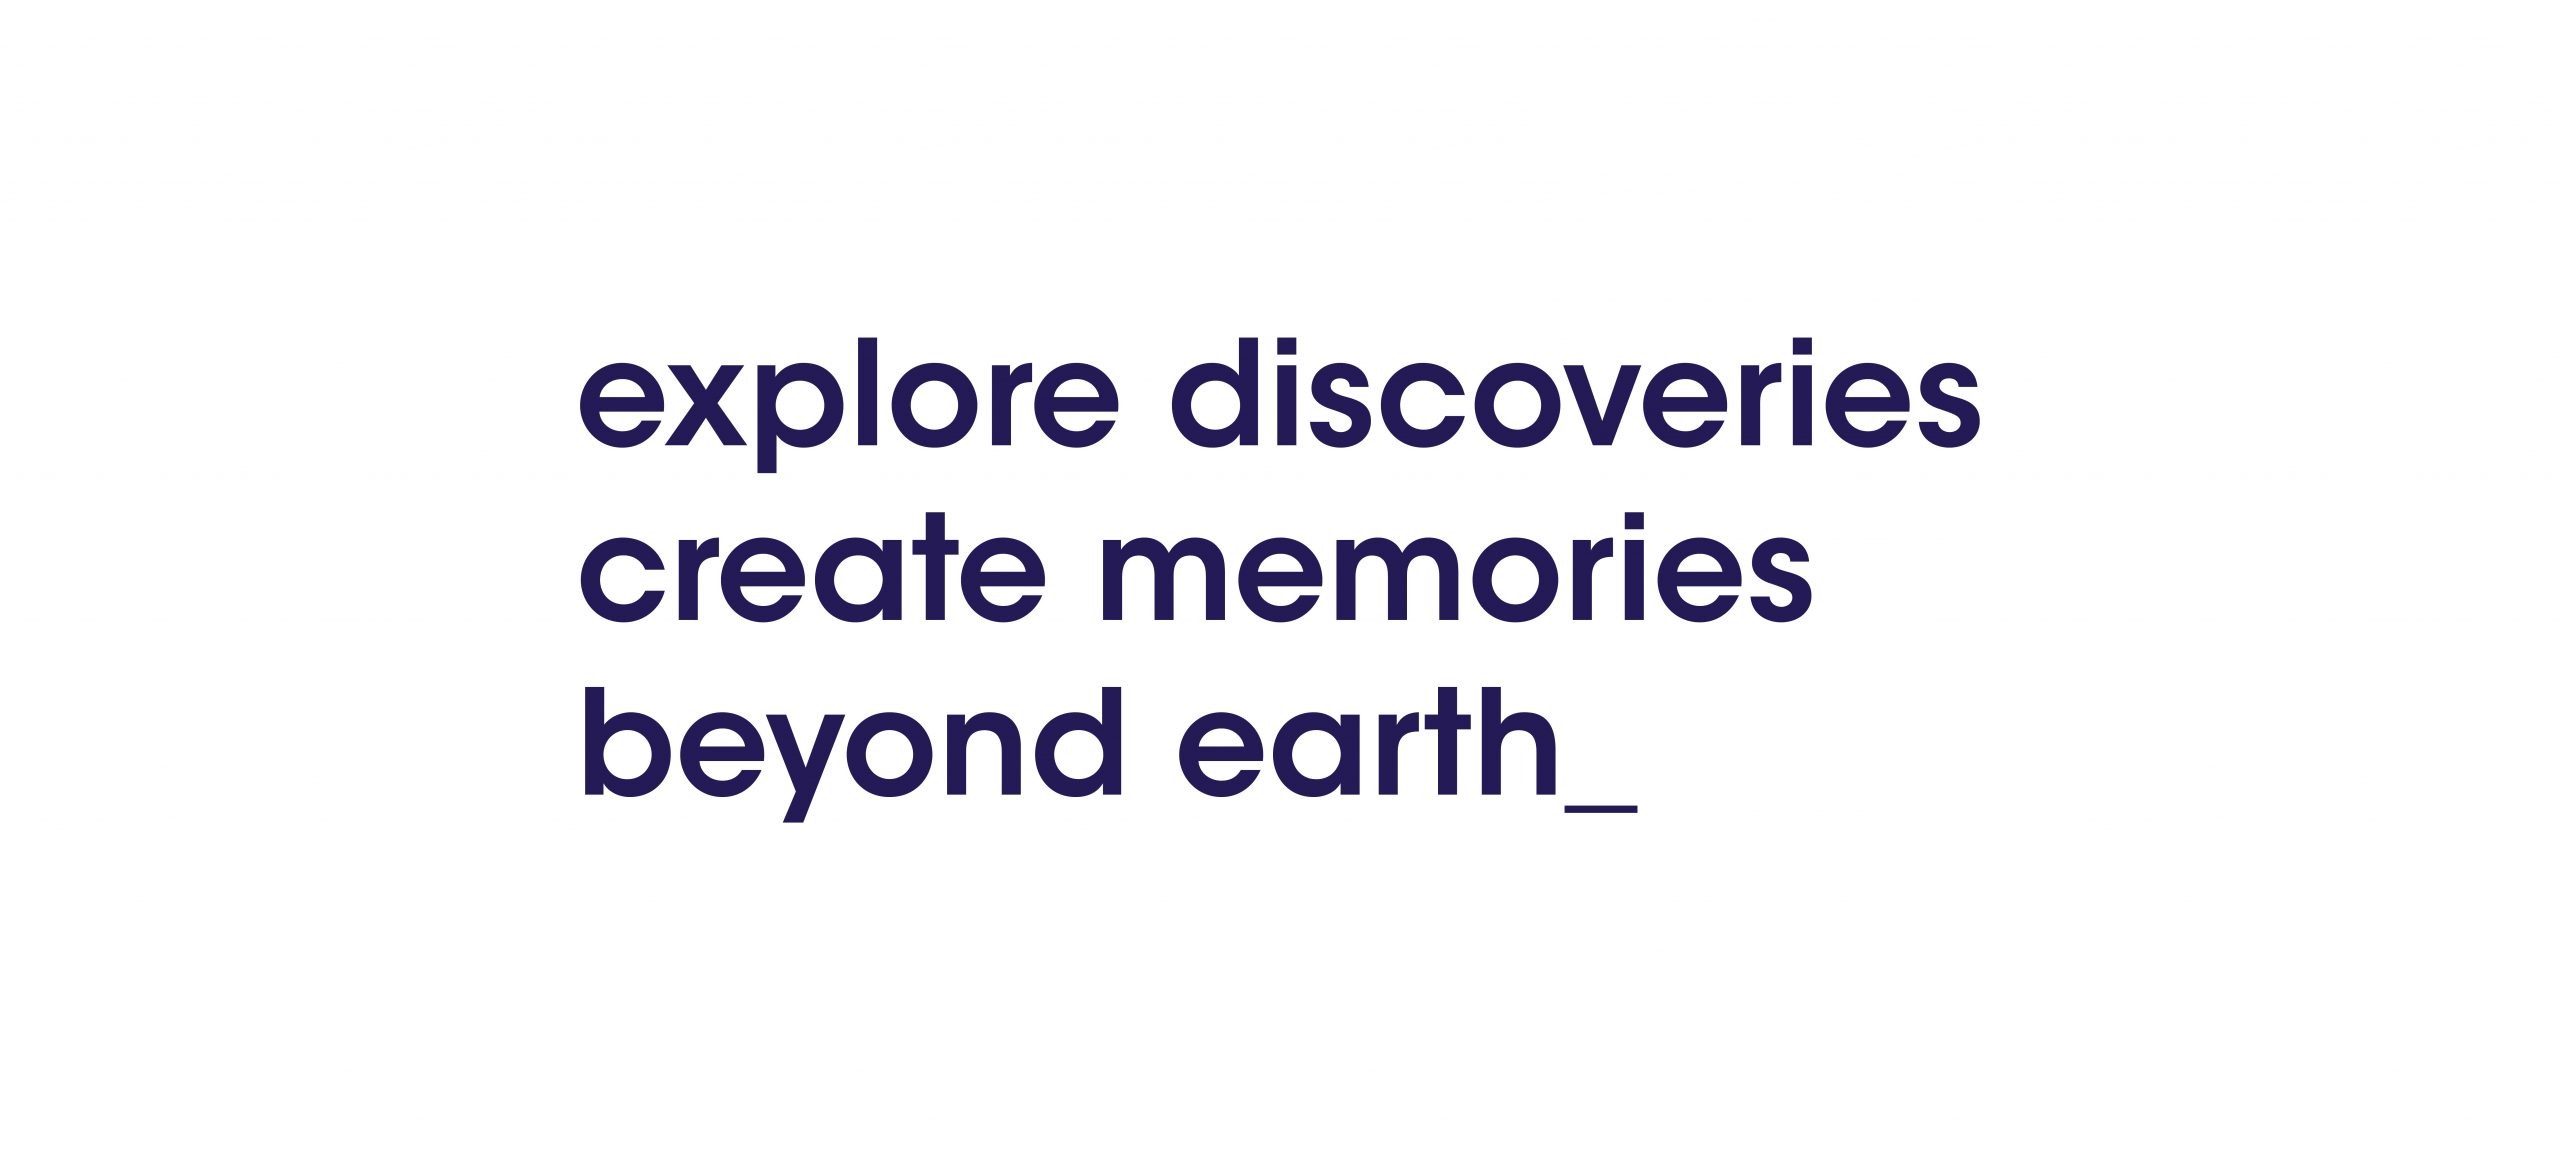 Baseline du projet Beyond Earth écrite en bleue sur fond blanc : "explore discoveries, create memories beyond earth"